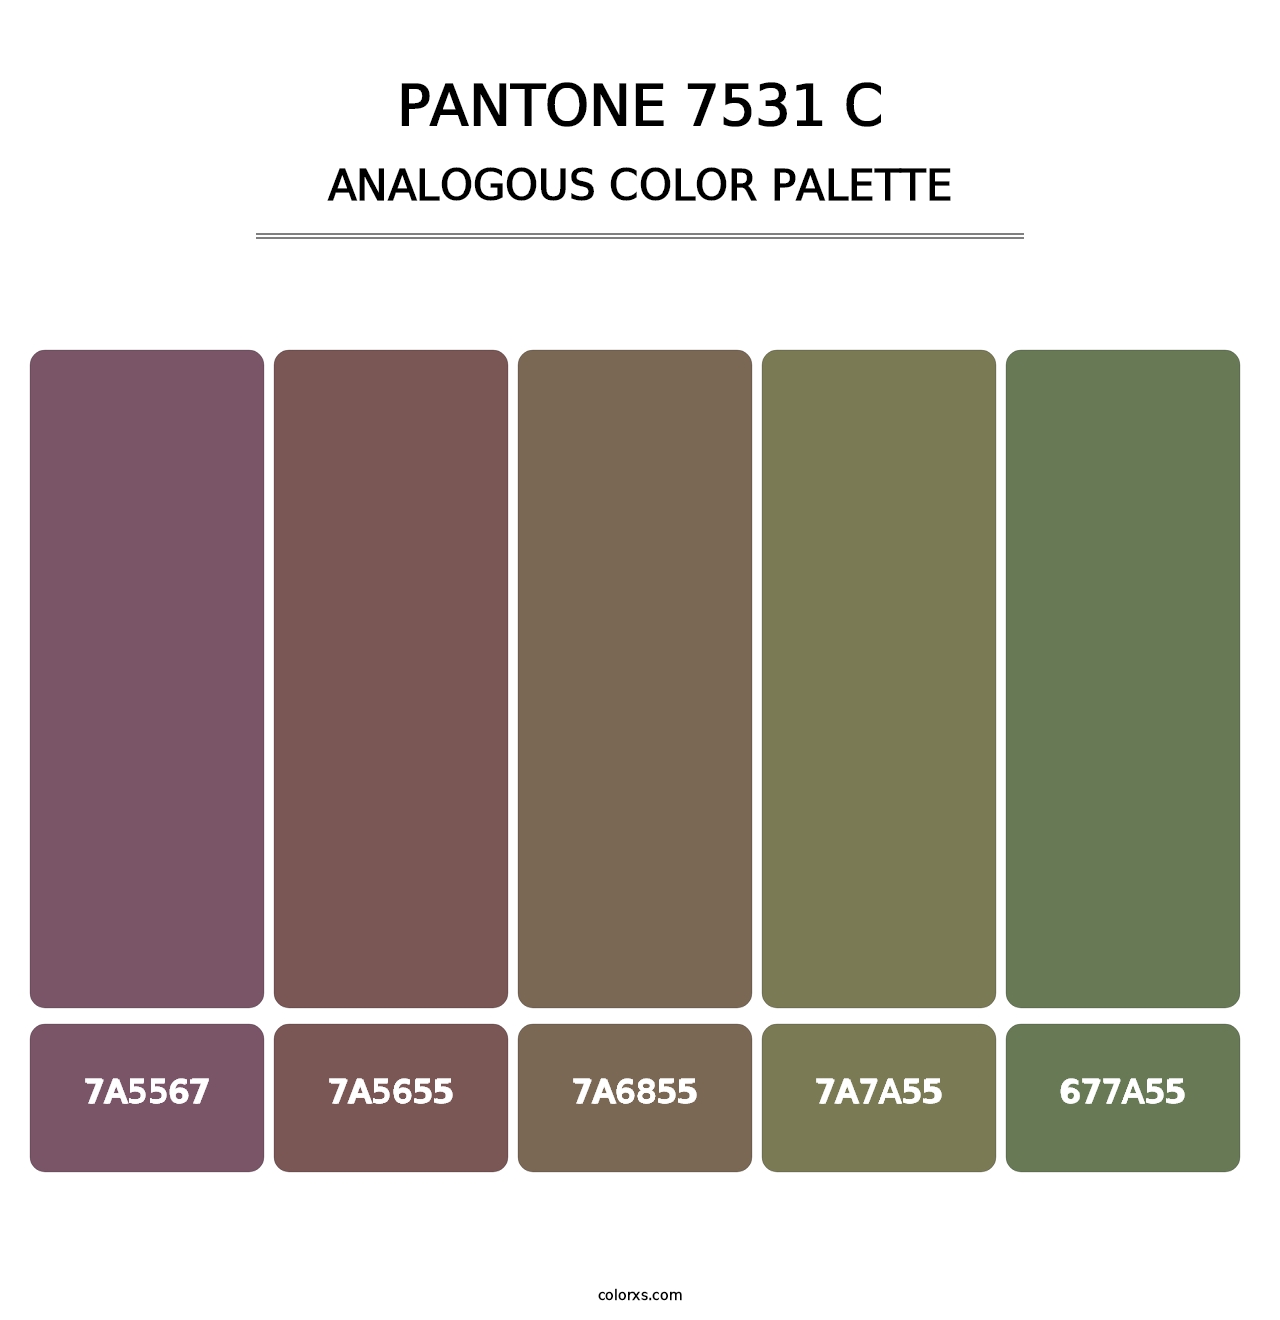 PANTONE 7531 C - Analogous Color Palette